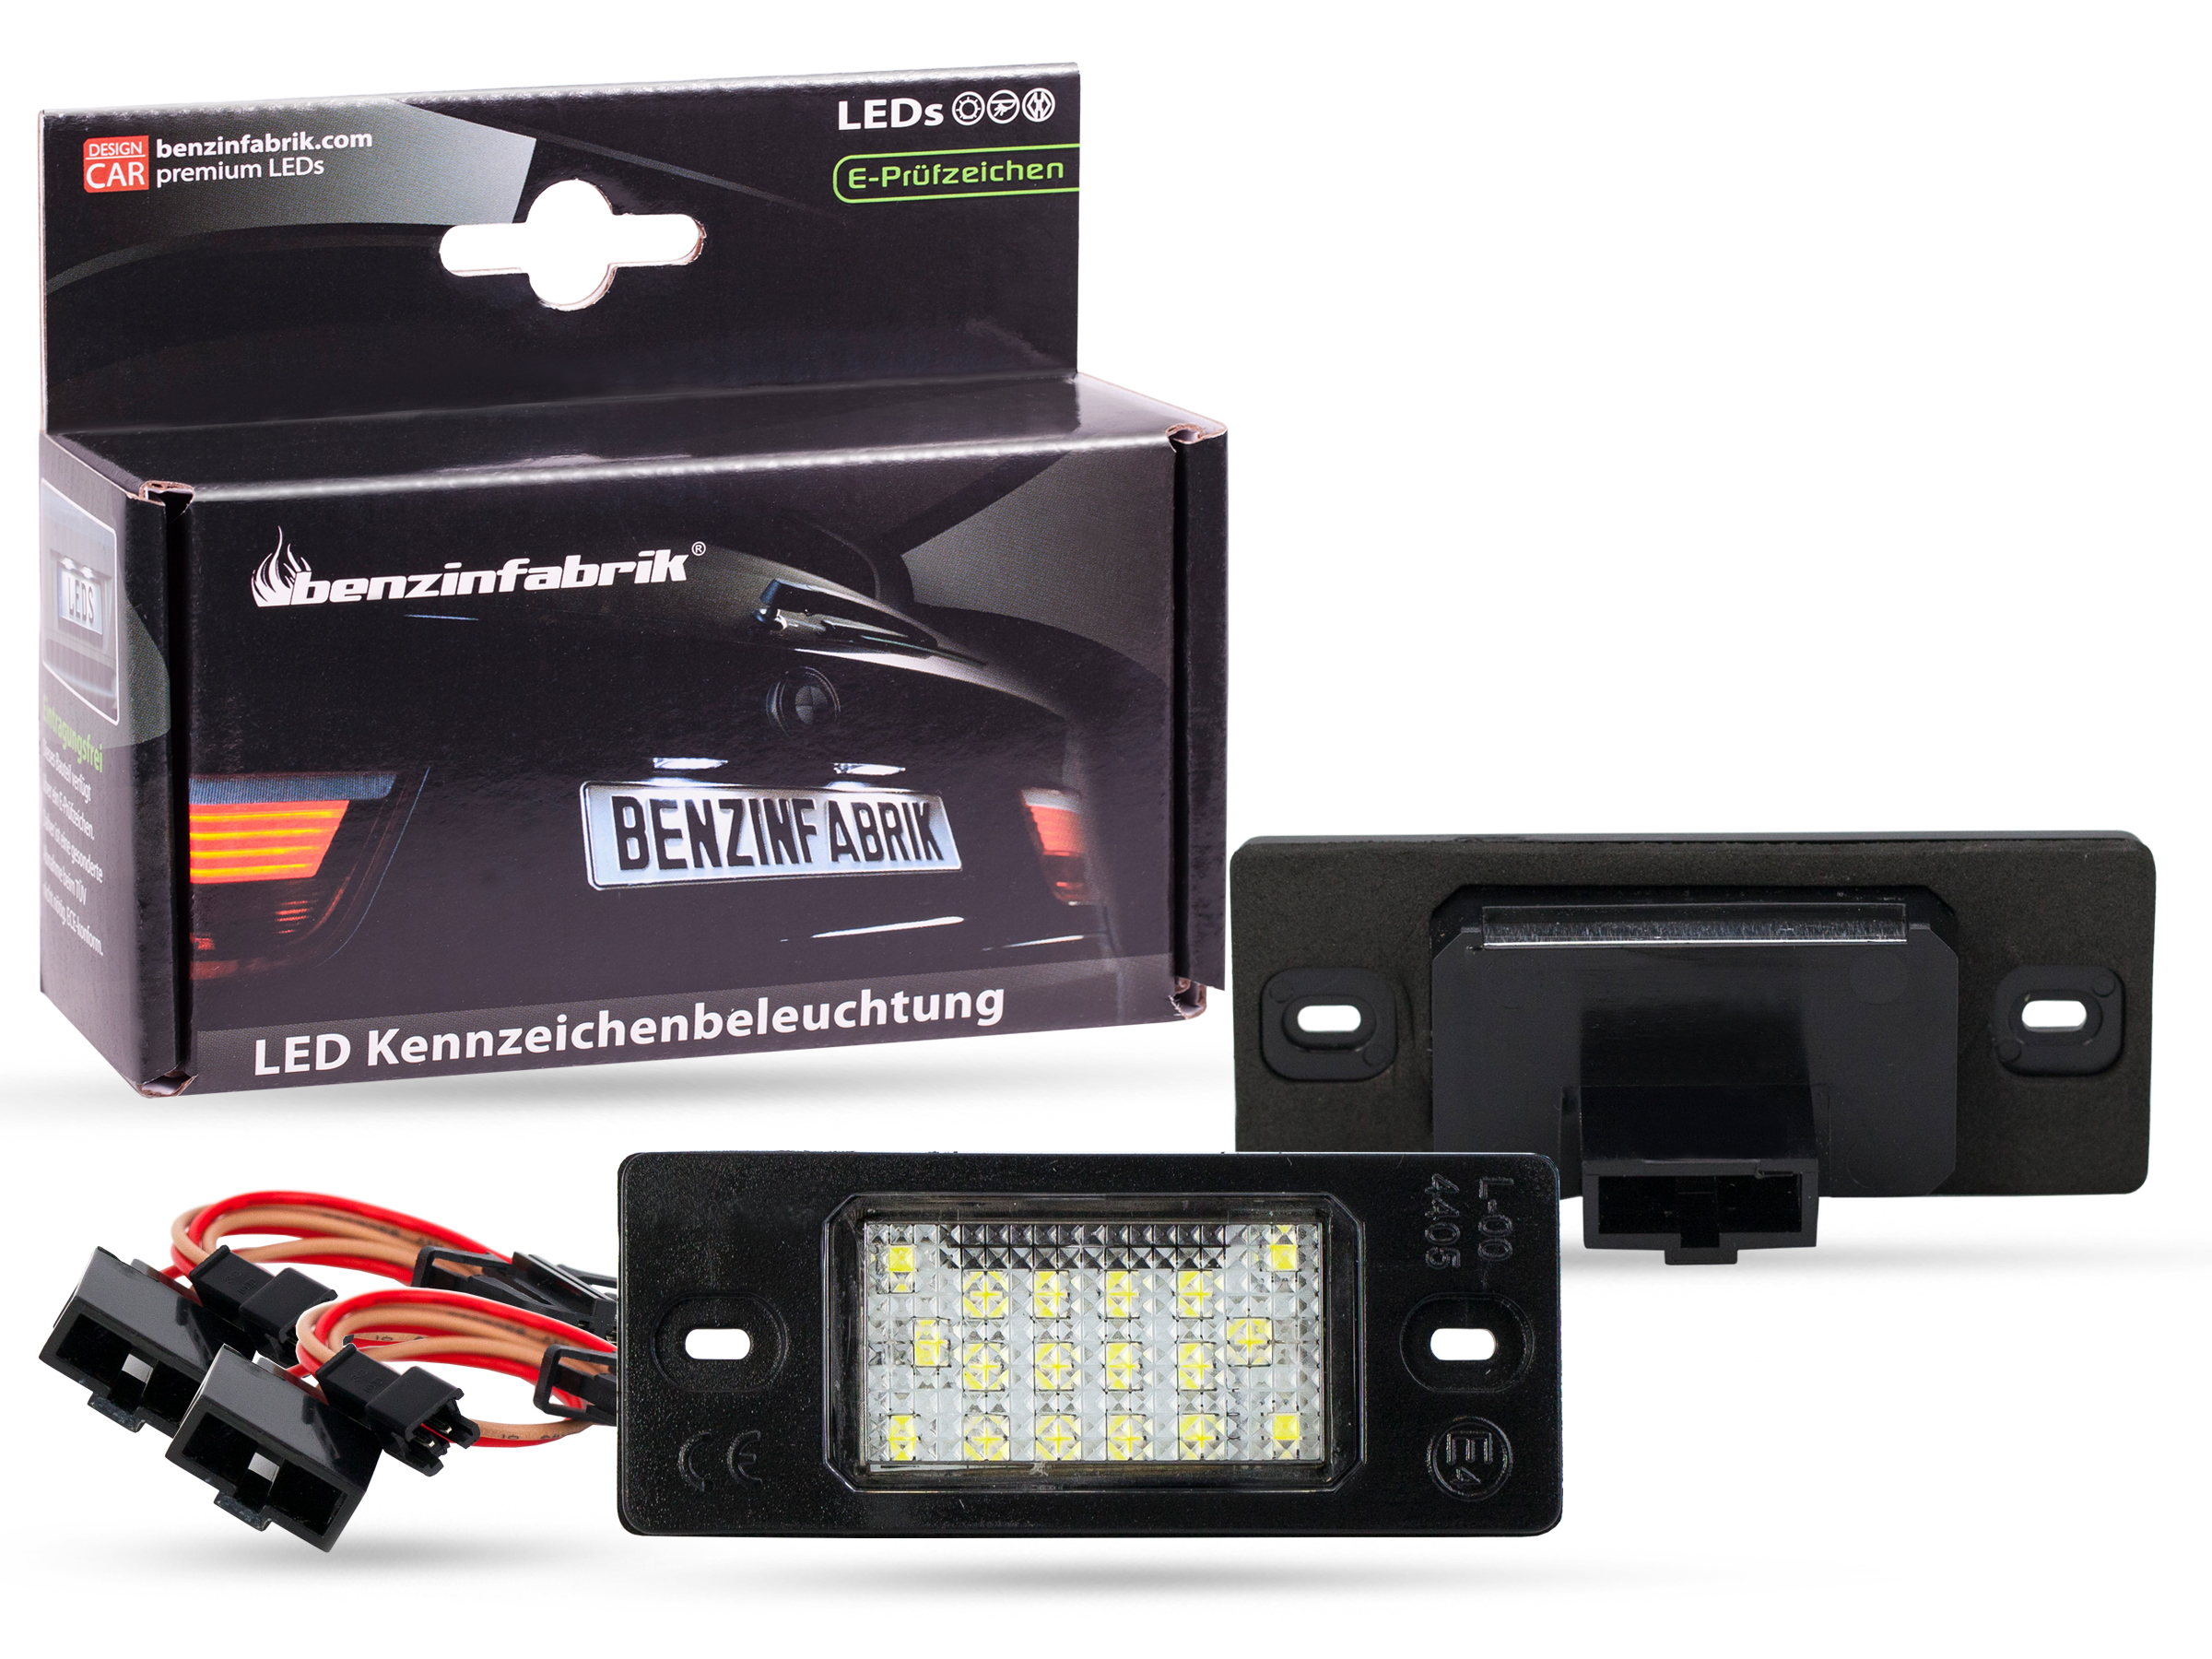 LED Kennzeichenbeleuchtung Module VW Golf 4 IV Variant, mit E